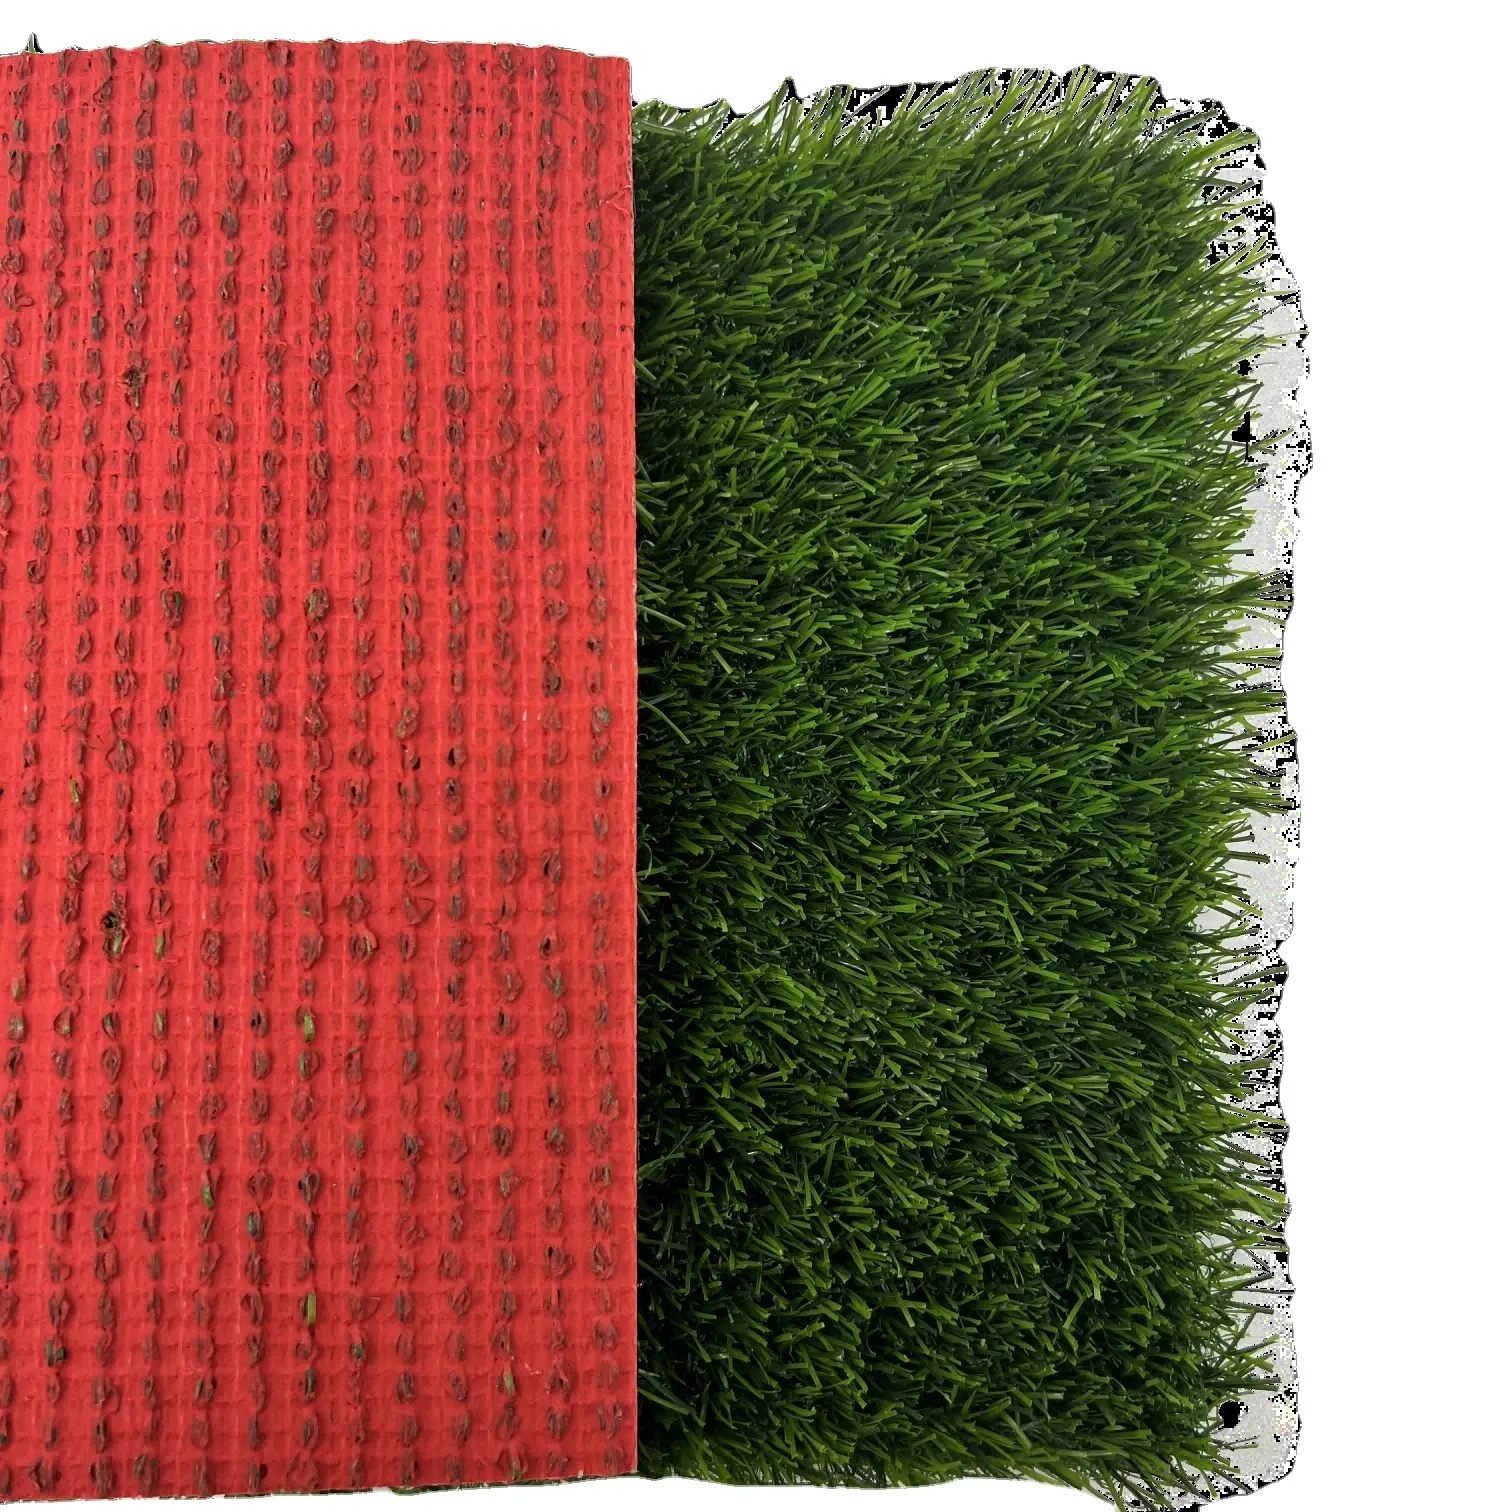 Hanwei Grass best seller customizable artificial turf grass Hot in Kuwait red background roll of artificial grass 35mm